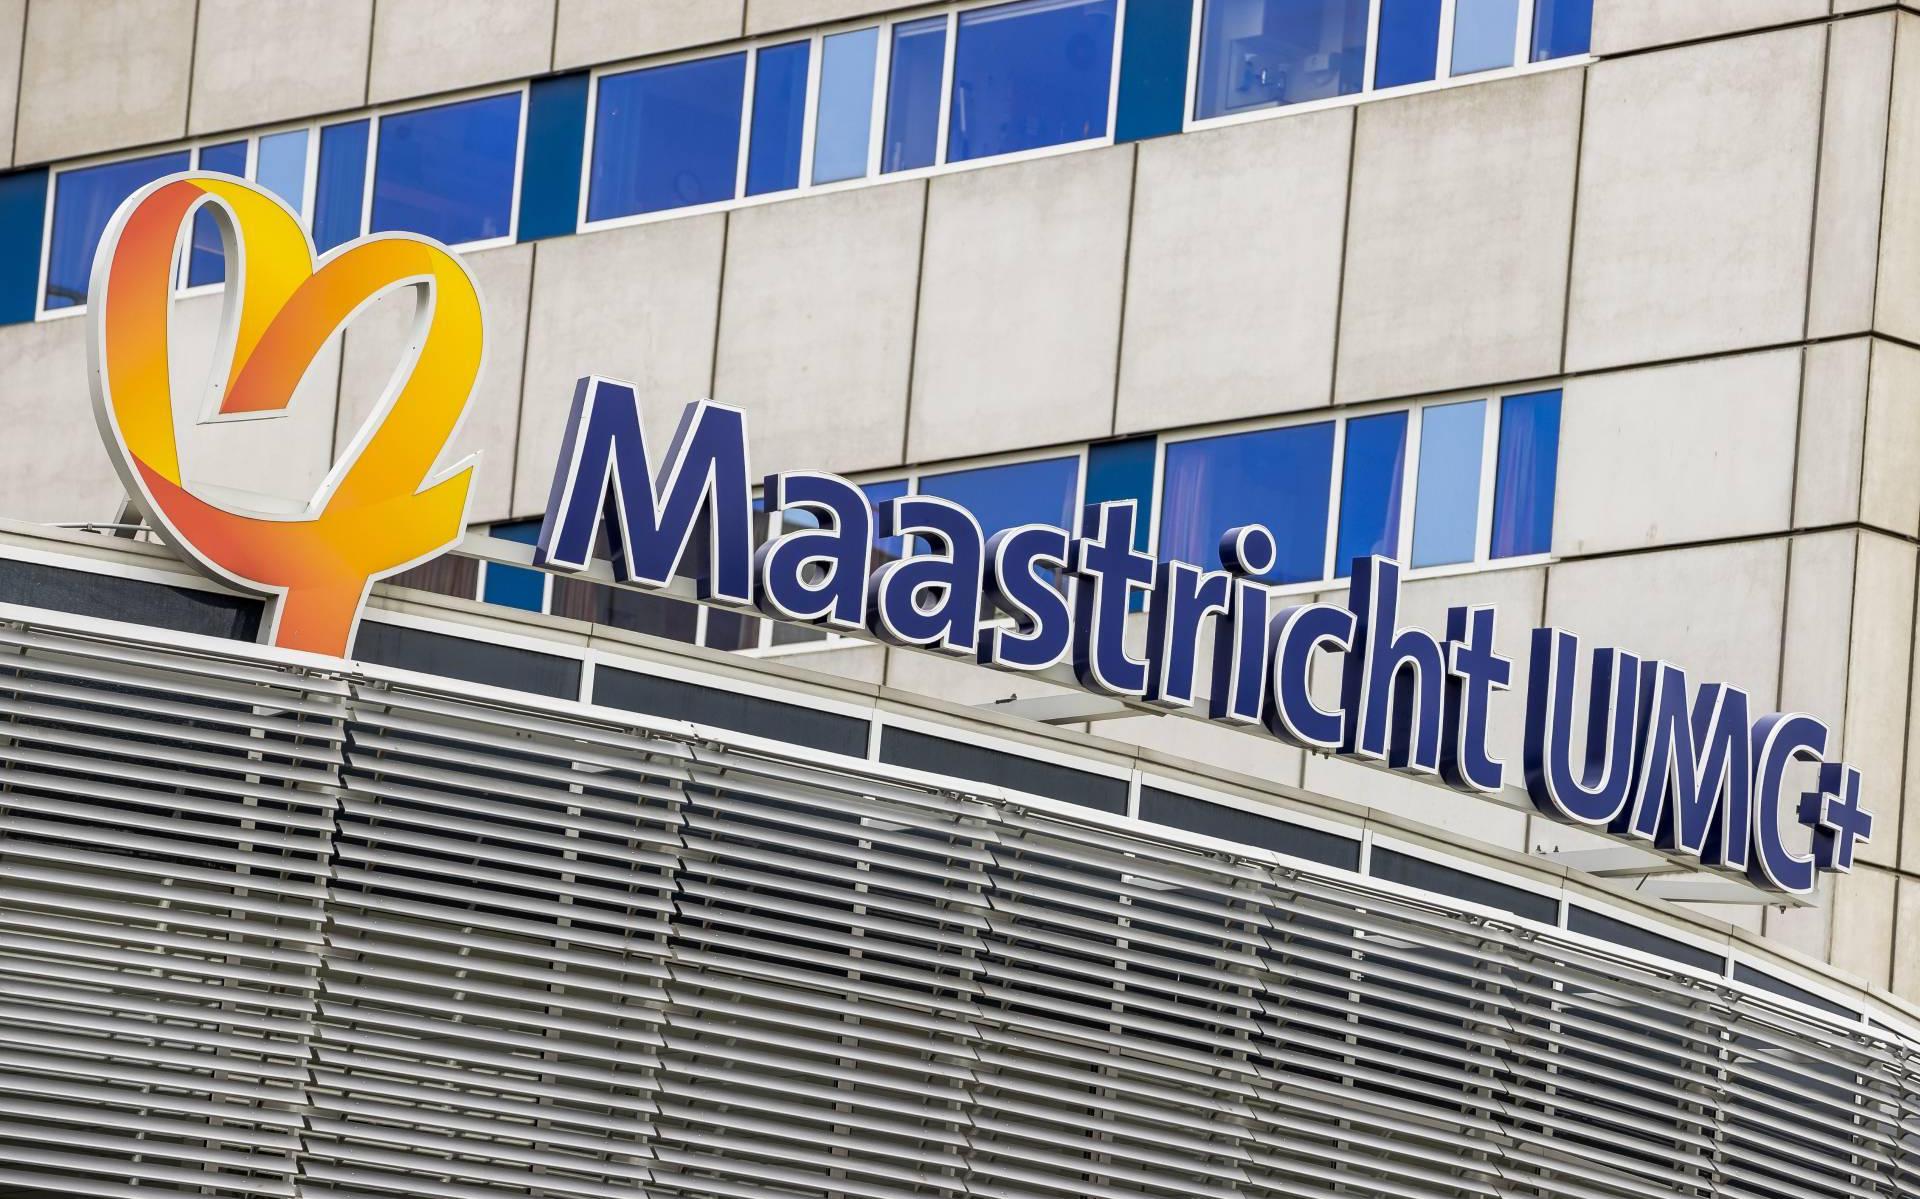 Ziekenhuis Maastricht plat door storing, poliklinieken dicht